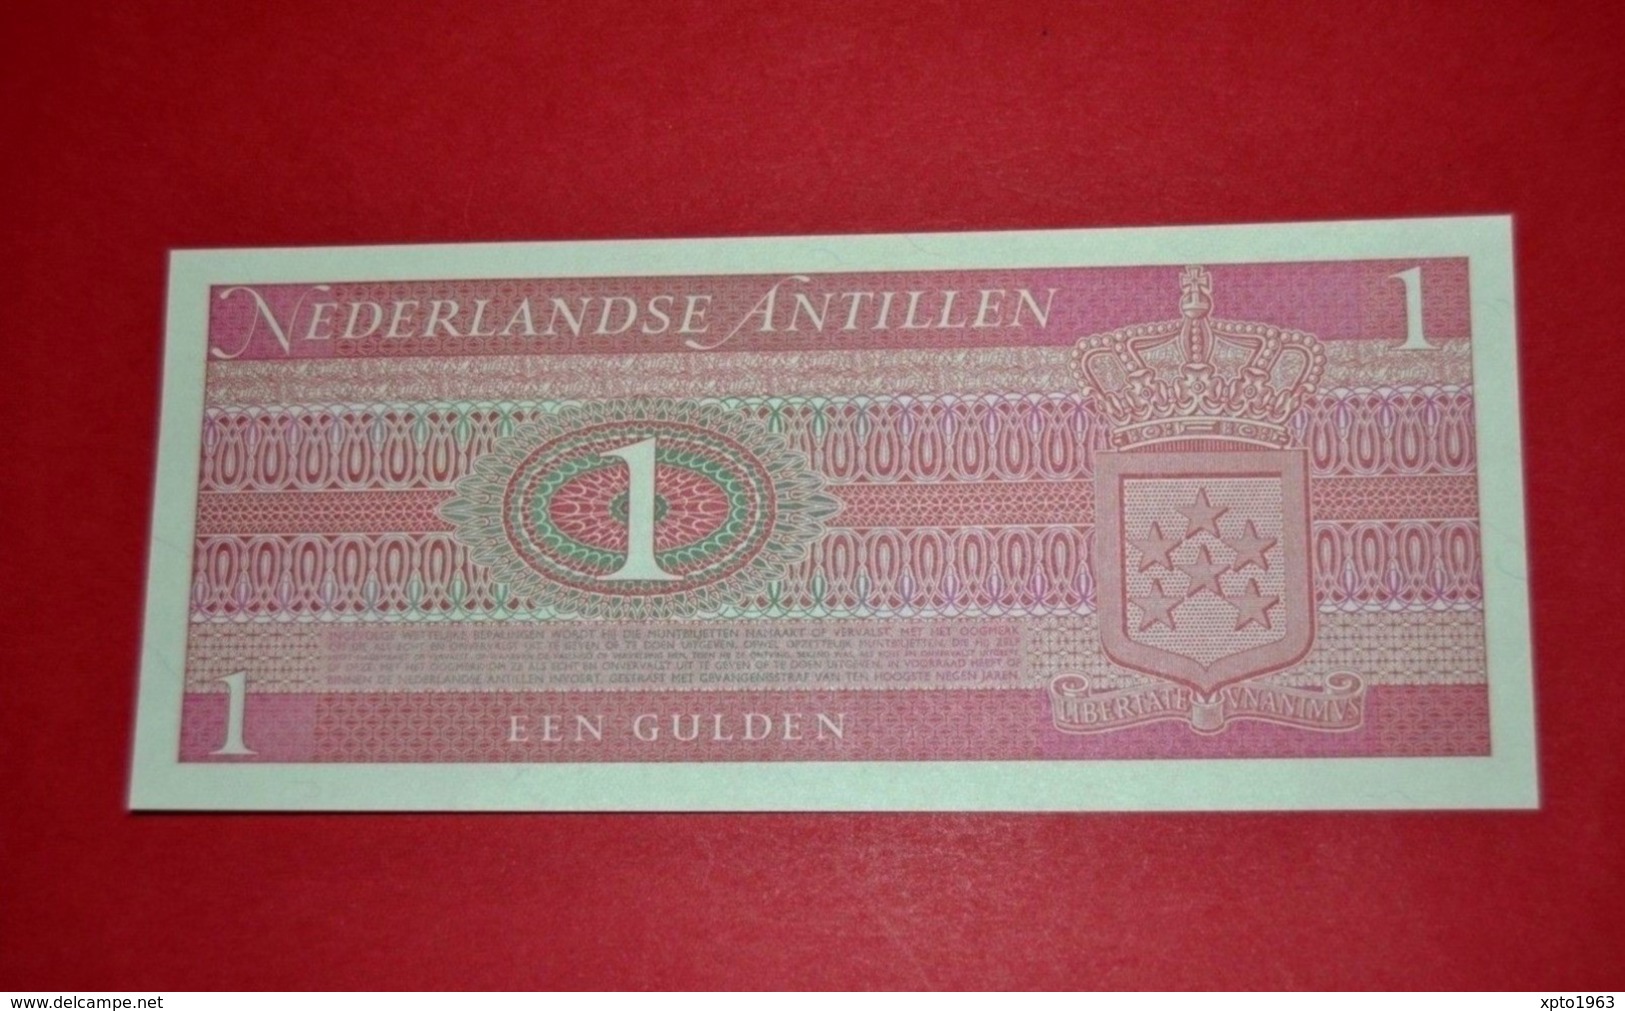 Netherlands Antilles 1 Gulden, 1970, P-20, UNC - NEUF - Niederländische Antillen (...-1986)